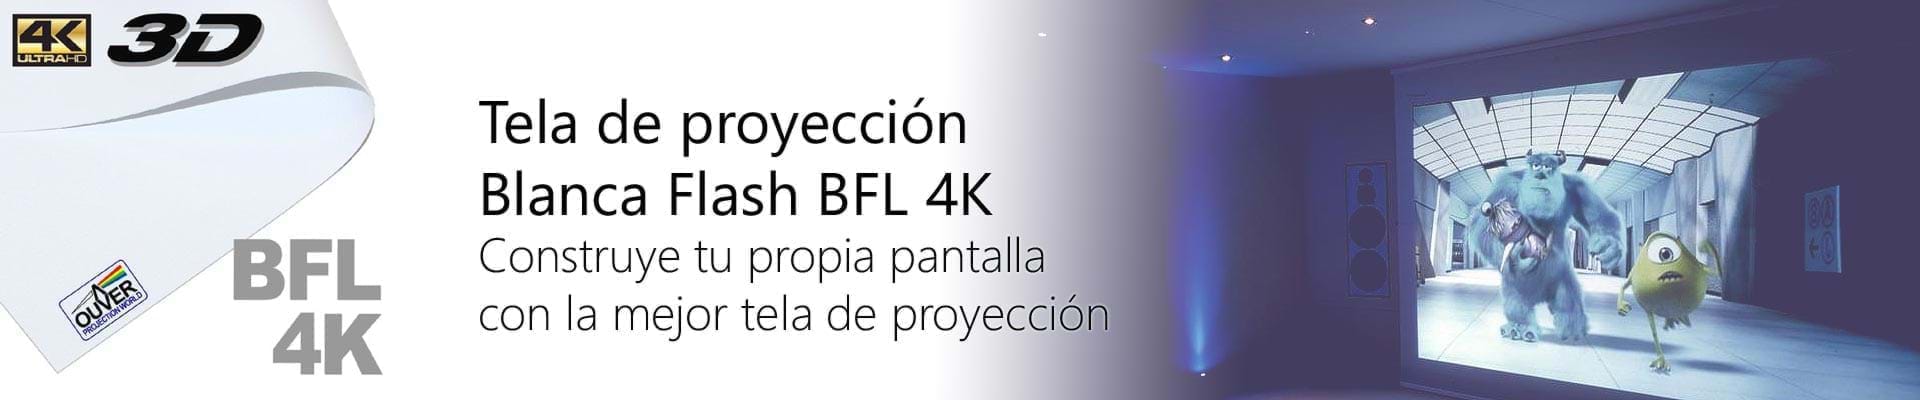 Tela proyección frontal Blanca Flash BFL 4K